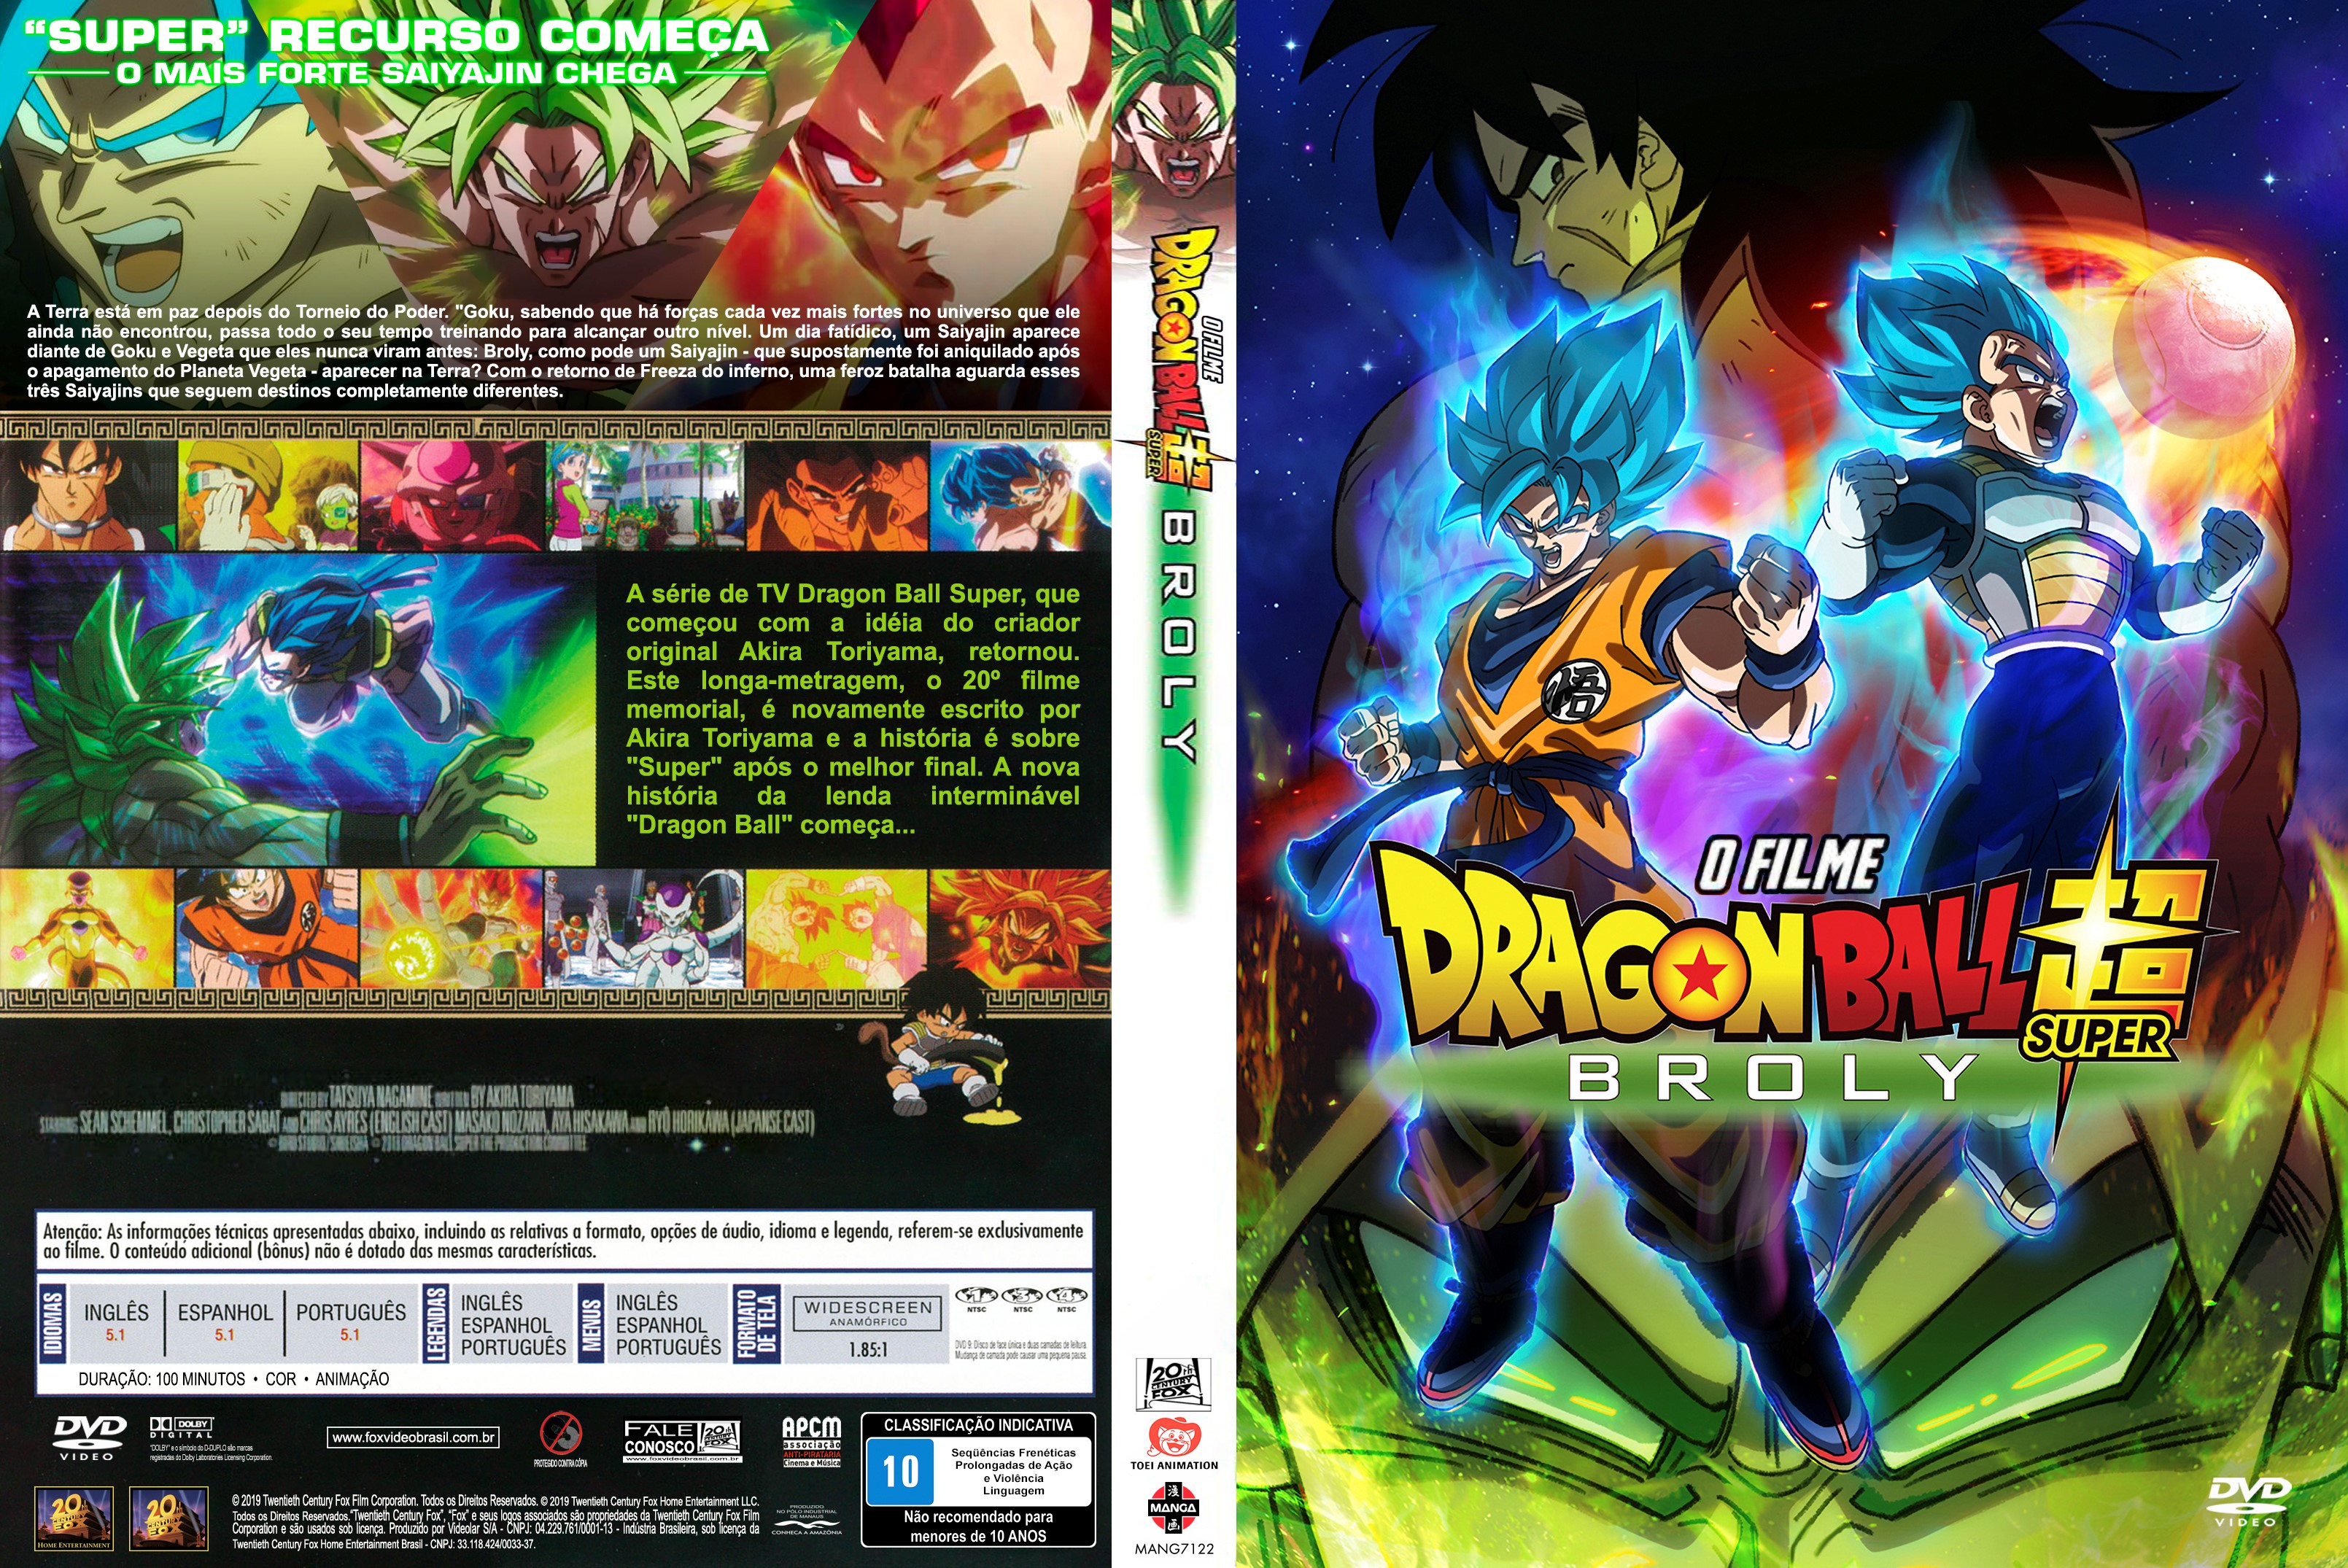 DRAGON BALL SUPER: BROLY O FILME #dragonballsuperbroly #dublado